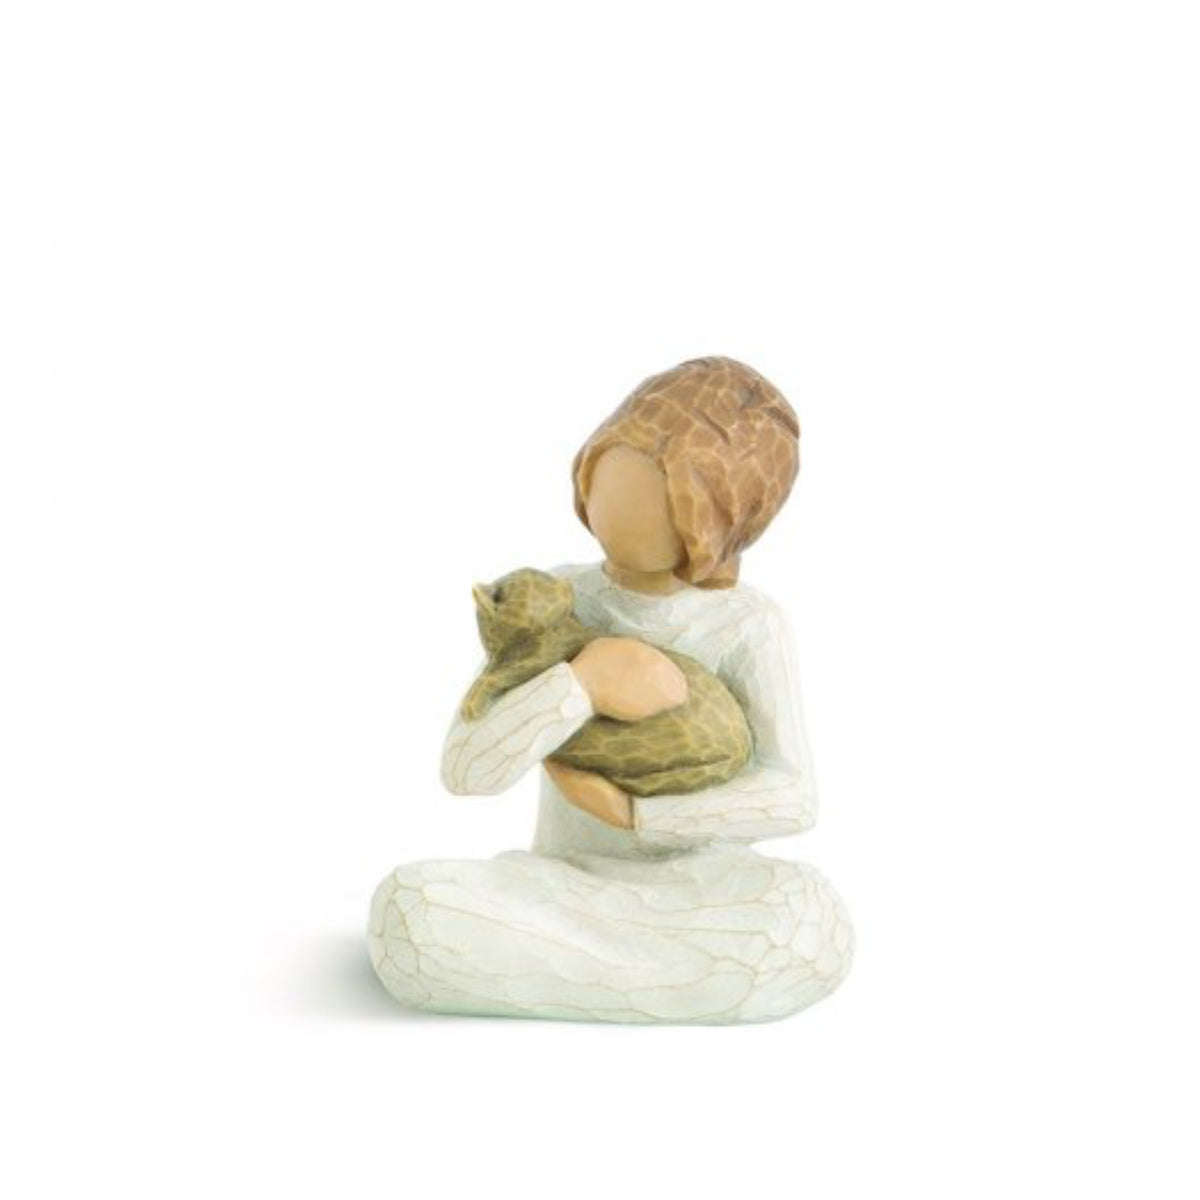 Willow Tree é uma linha íntima de estatuetas criada pela artista Susan Lordi representativas de: amor, proximidade, cura, coragem, esperança, família entre outras emoções que encontramos na vida.  Envolvida numa caixa com a mensagem: 'Acima de tudo, bondade'.